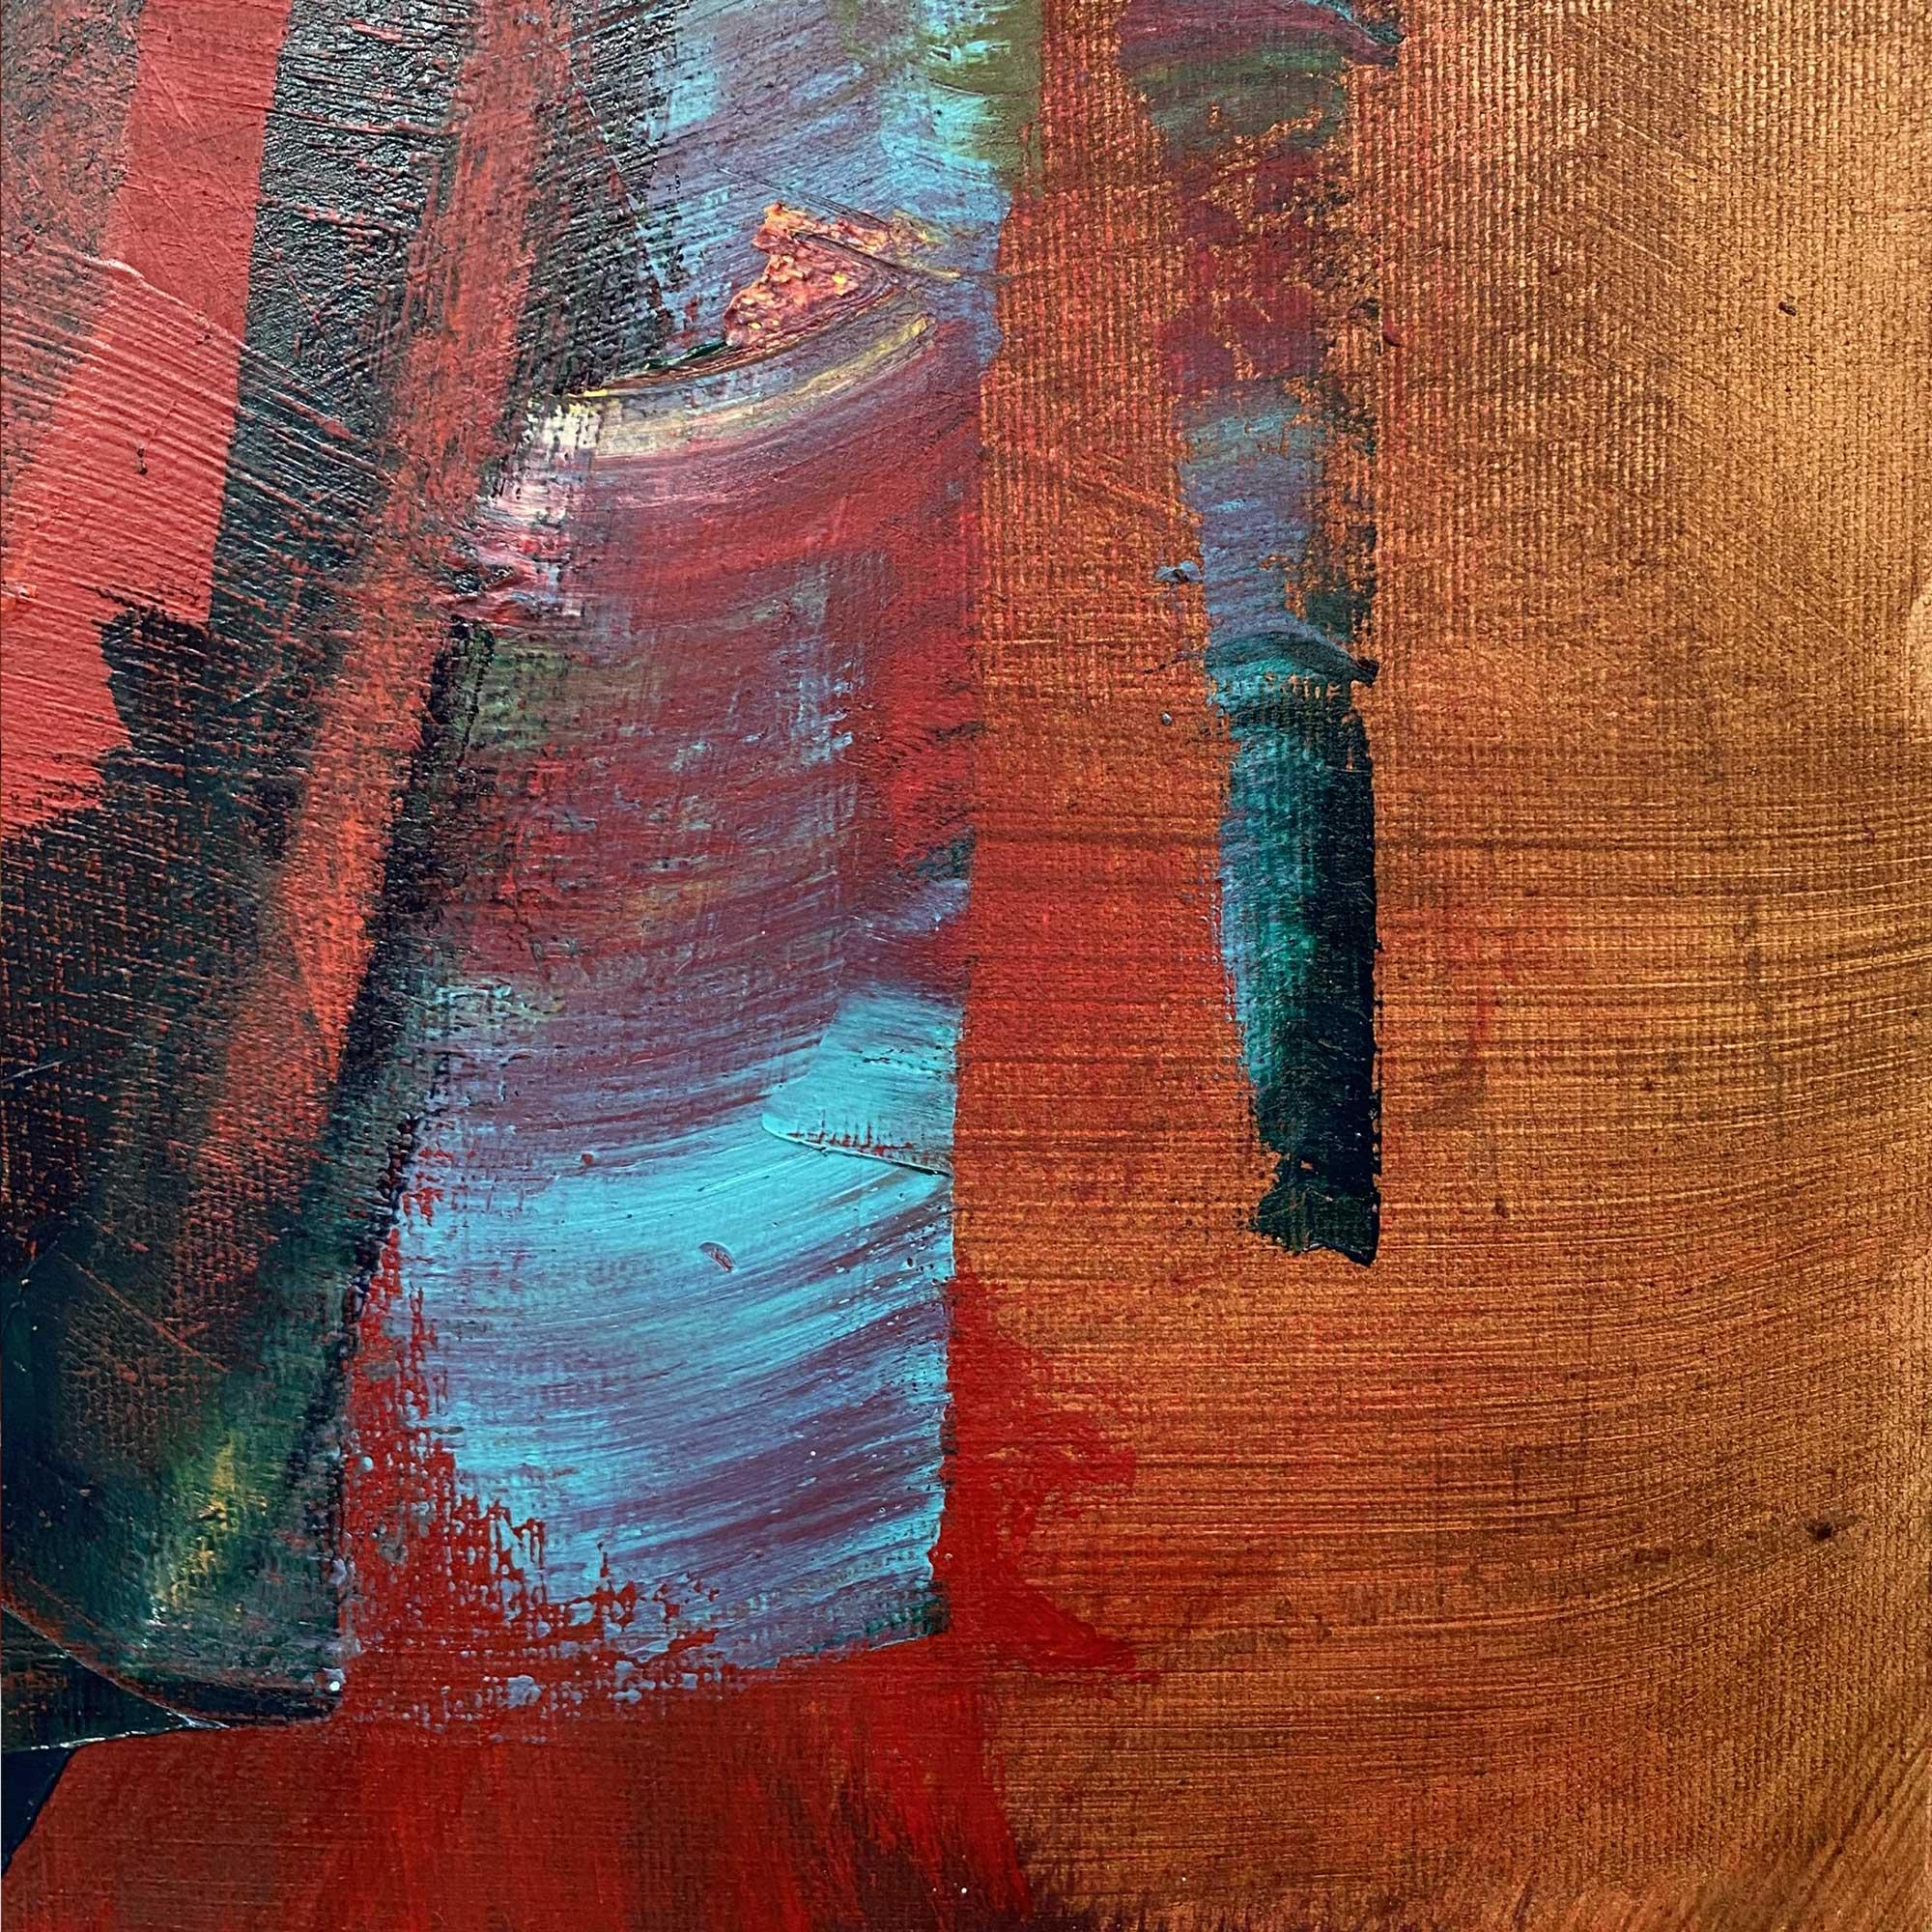 Helens Paradies (Abstraktes Gemälde) (Abstraktes Gemälde)
Öl und Erde auf Baumwollpapier (640g) - Ungerahmt
Dieses Kunstwerk ist exklusiv bei IdeelArt erhältlich.

Dieses Kunstwerk wird aufgerollt in einer verbeulungssicheren Röhre versandt.
Diese